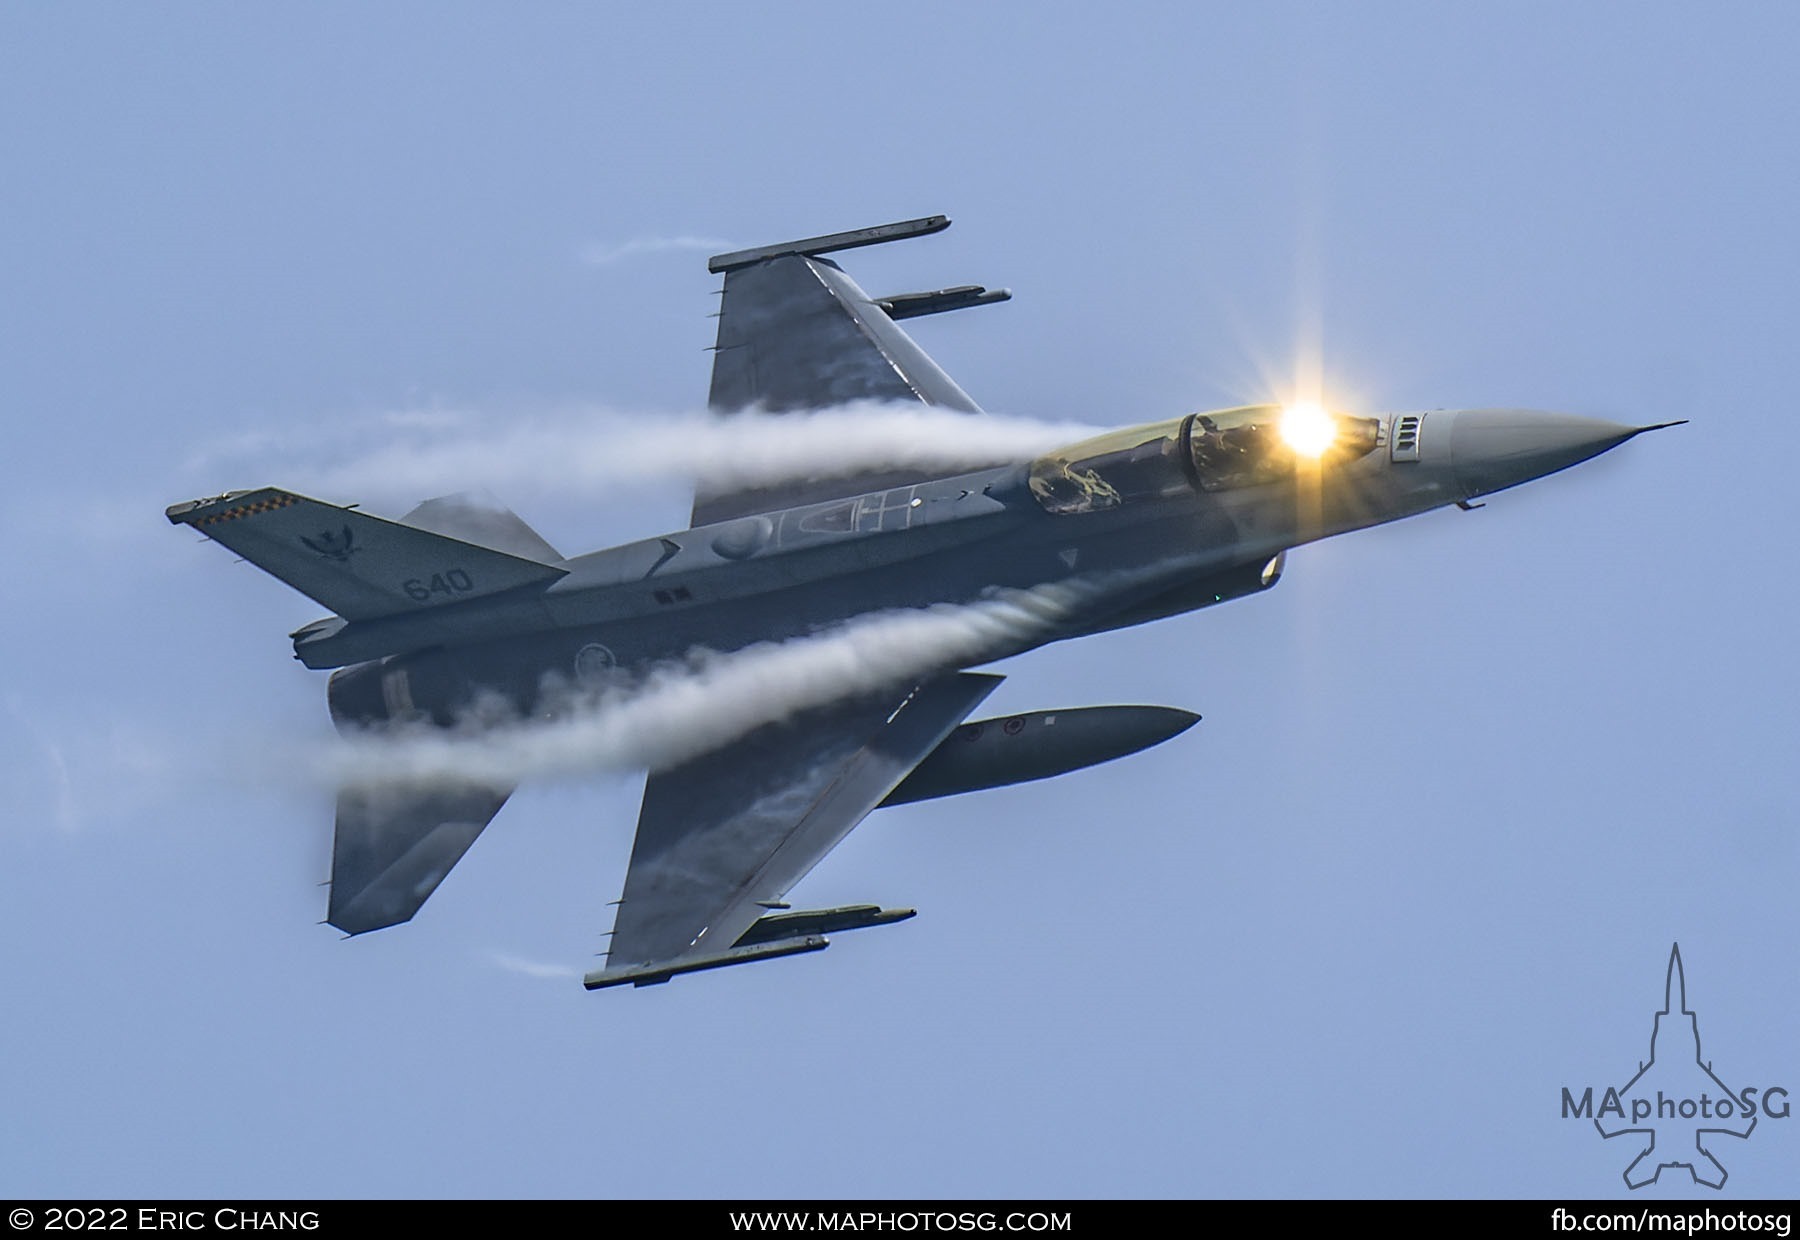 Sun glints of the HUD of the F-16D as it makes a turn.